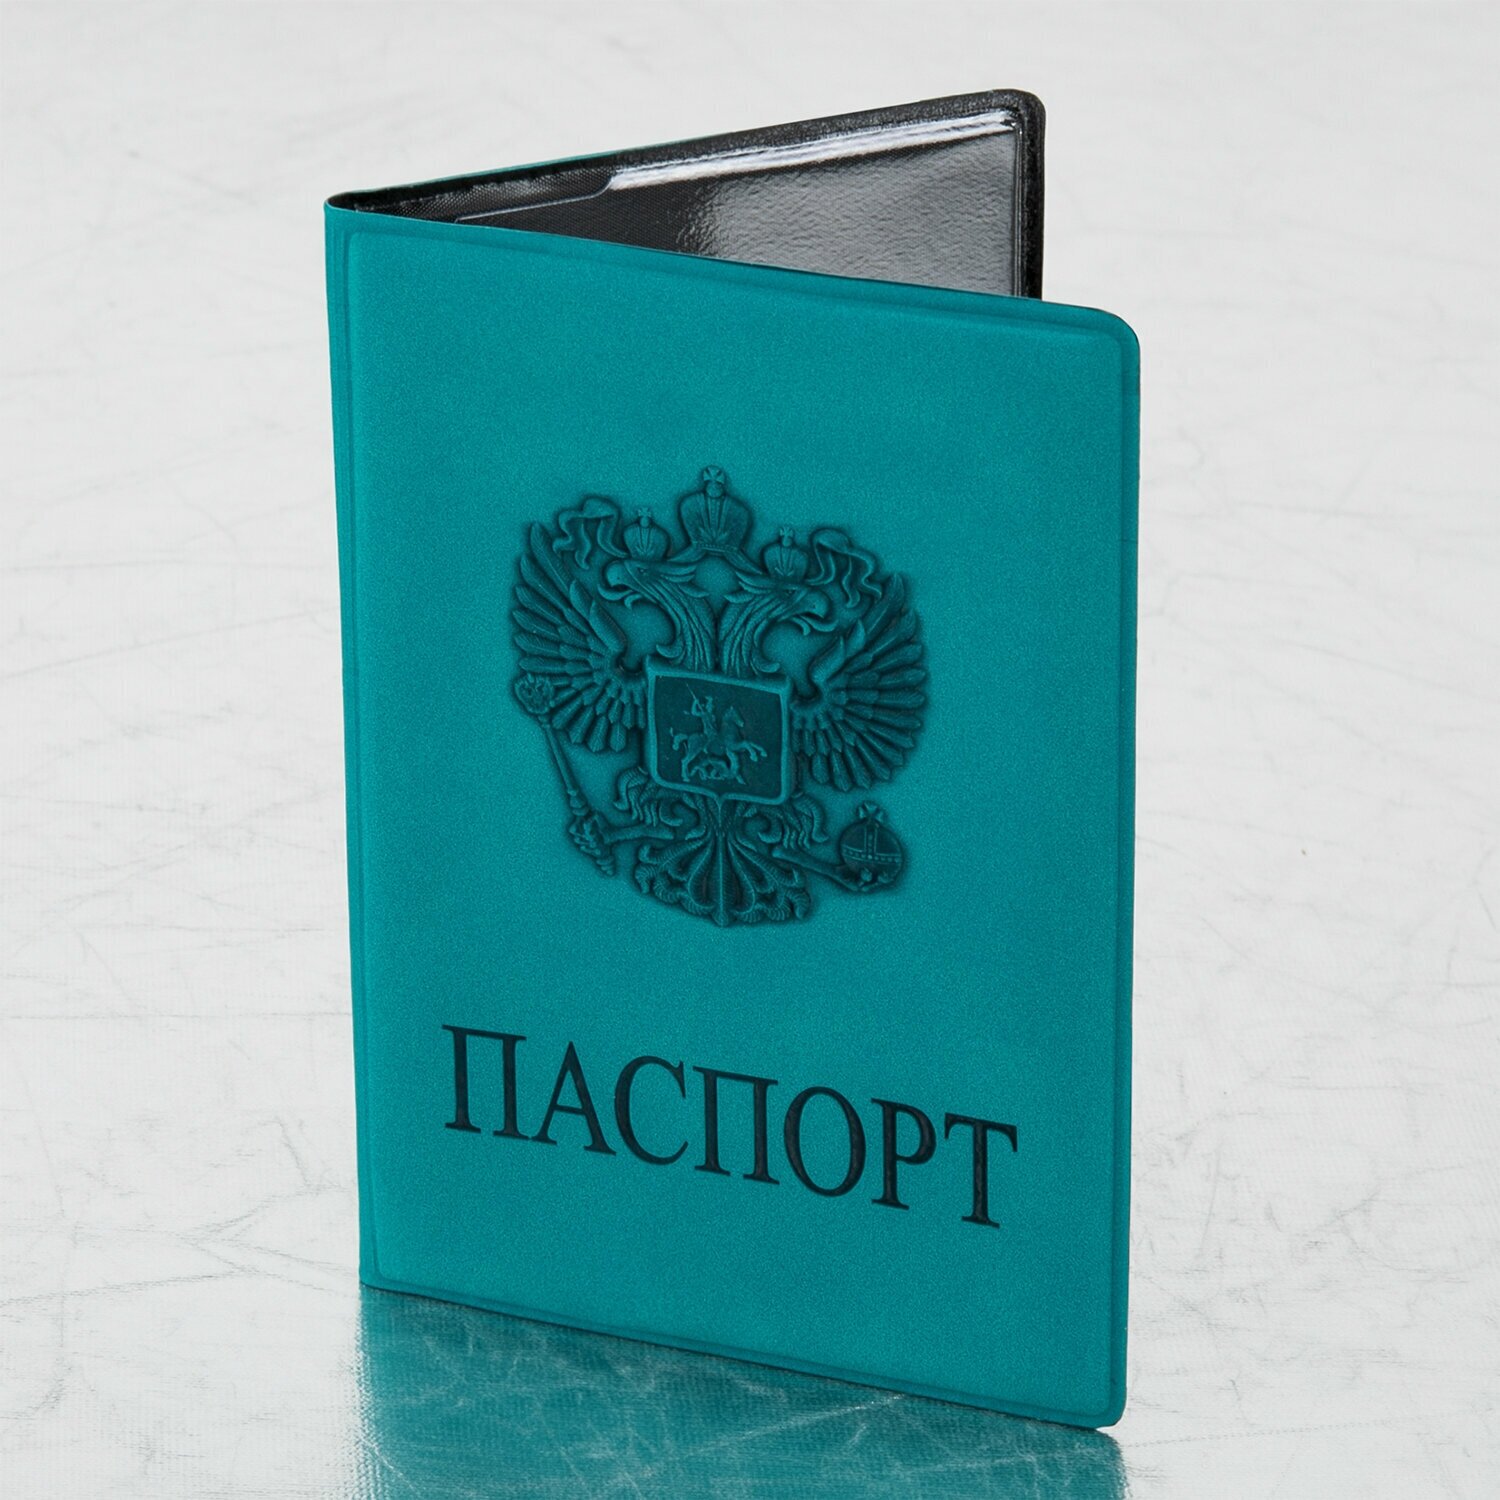 Обложка - чехол для паспорта и документов Staff Герб темно-бирюзовая 237611